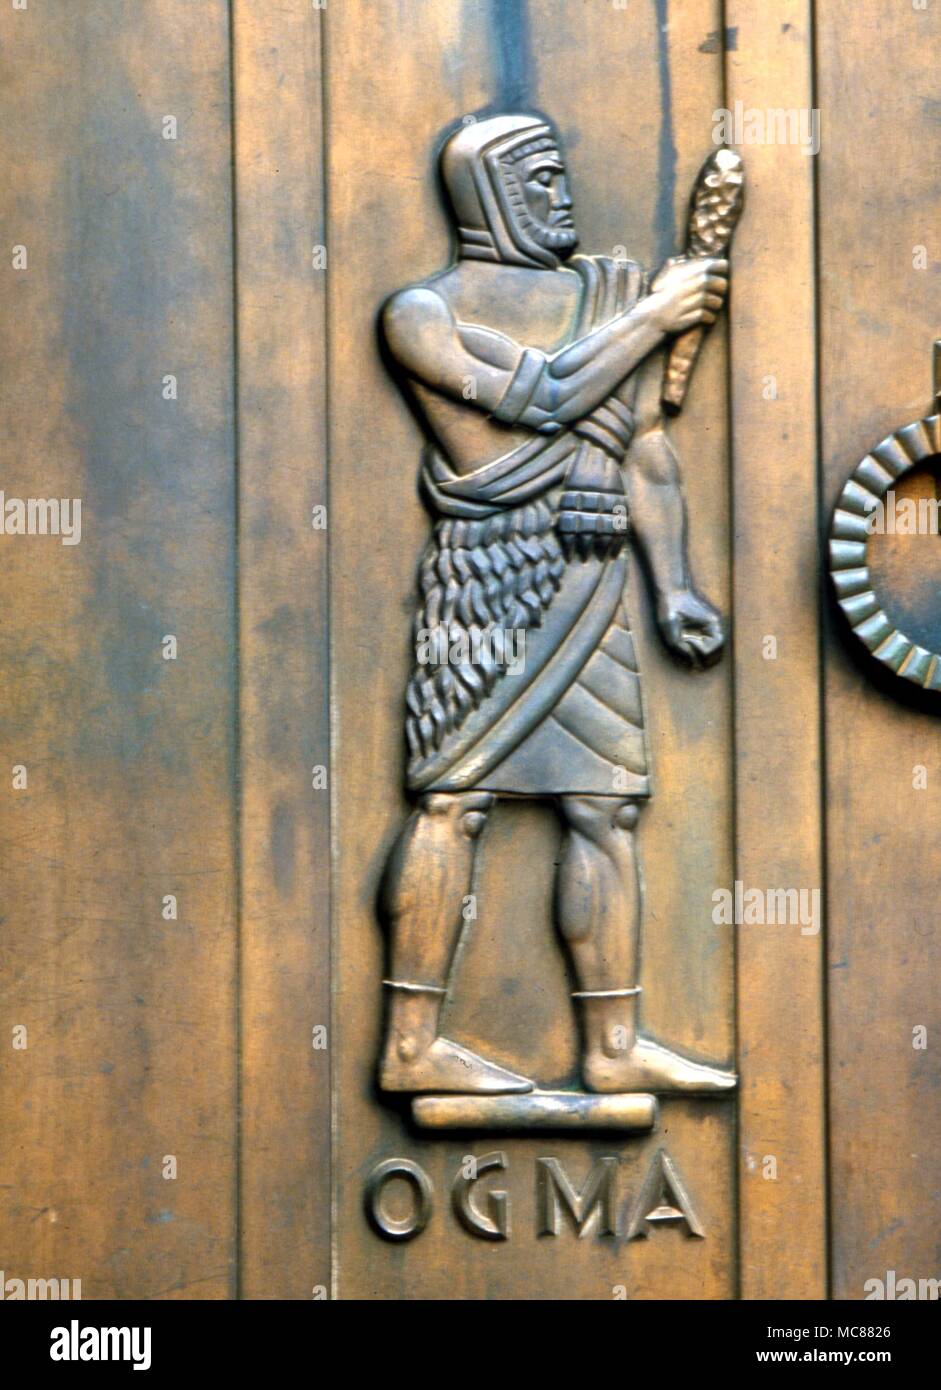 Keltische Mythologie - ogma der keltischen chiefinventor von Ogham alphabet Stockfoto